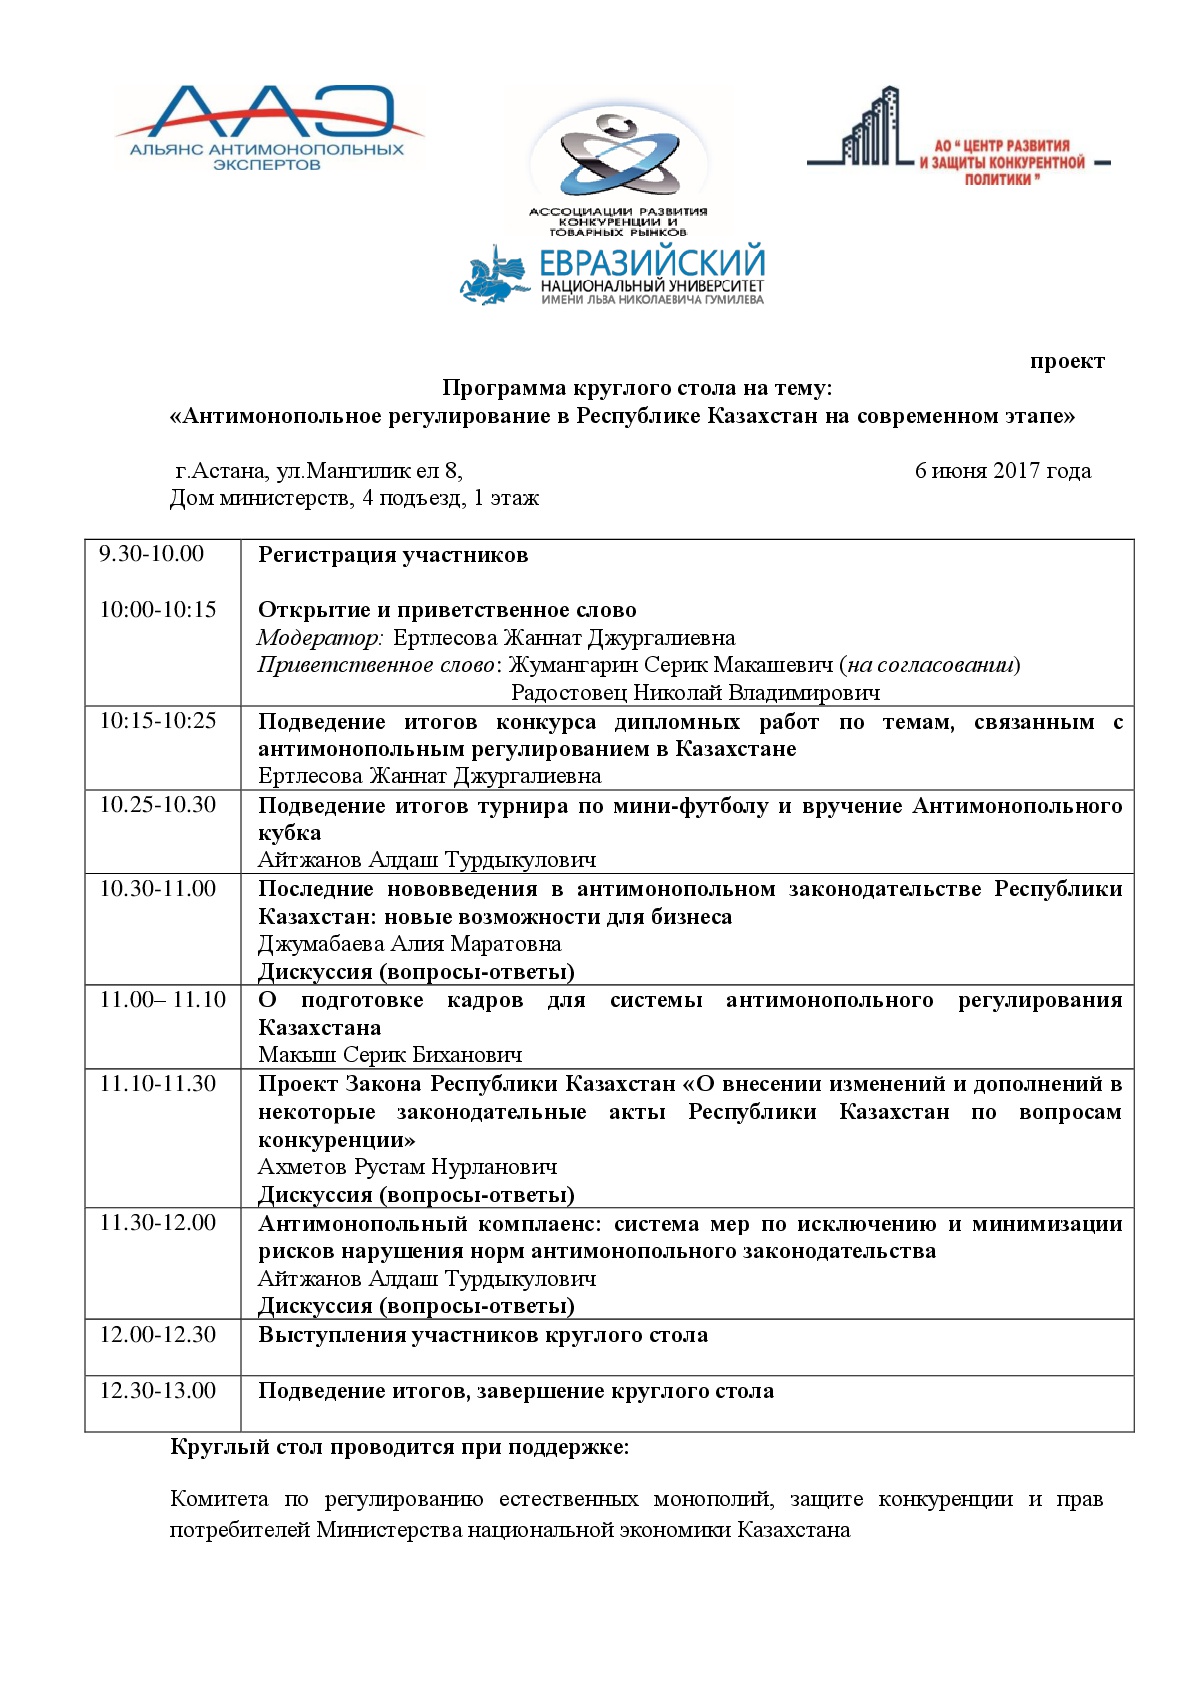 ПРОГРАММА круглого стола на тему:  «Антимонопольное регулирование в Республике Казахстан на современном этапе» 6 июня 2017 года в г.Астана